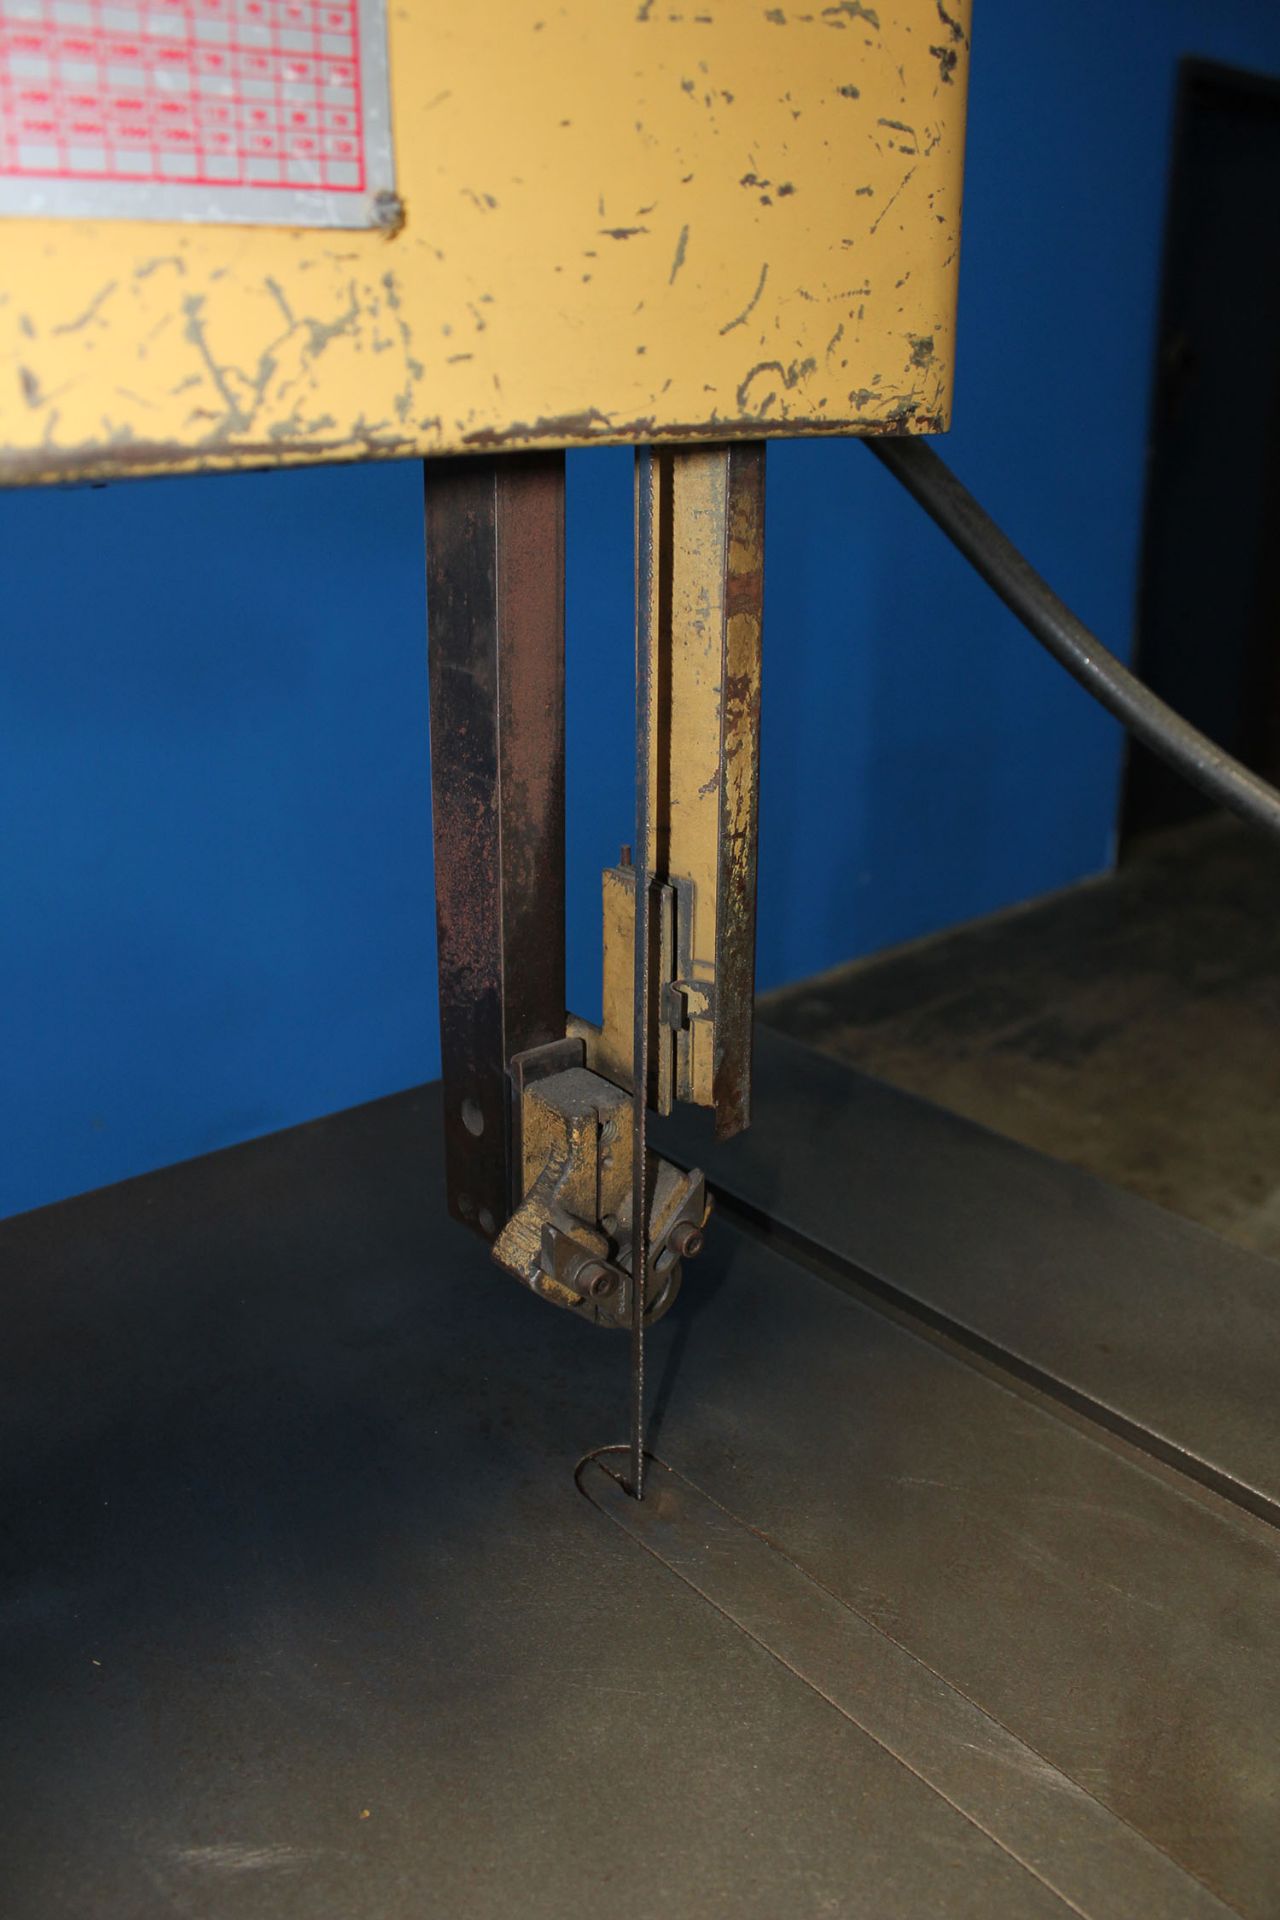 20" Throat Powermatic 87 Vertical Metal Cutting Bandsaw 1HP - Located In: Huntington Park, CA - 4707 - Image 7 of 7